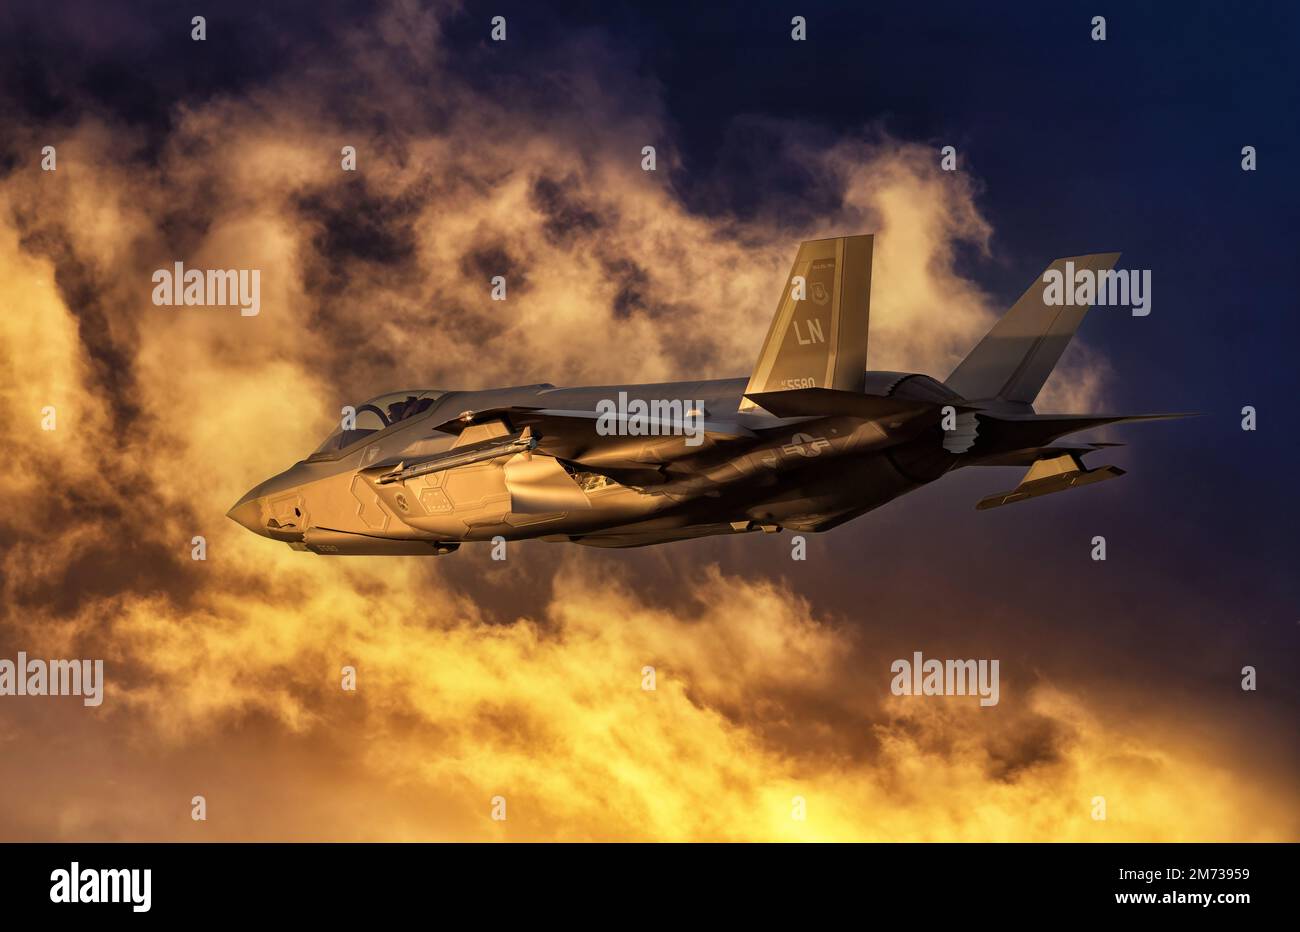 F-35 avion Fighter au coucher du soleil. Avion de chasse militaire moderne de cinquième génération revenant d'une mission de combat. Avion de chasse au ciel orange Banque D'Images